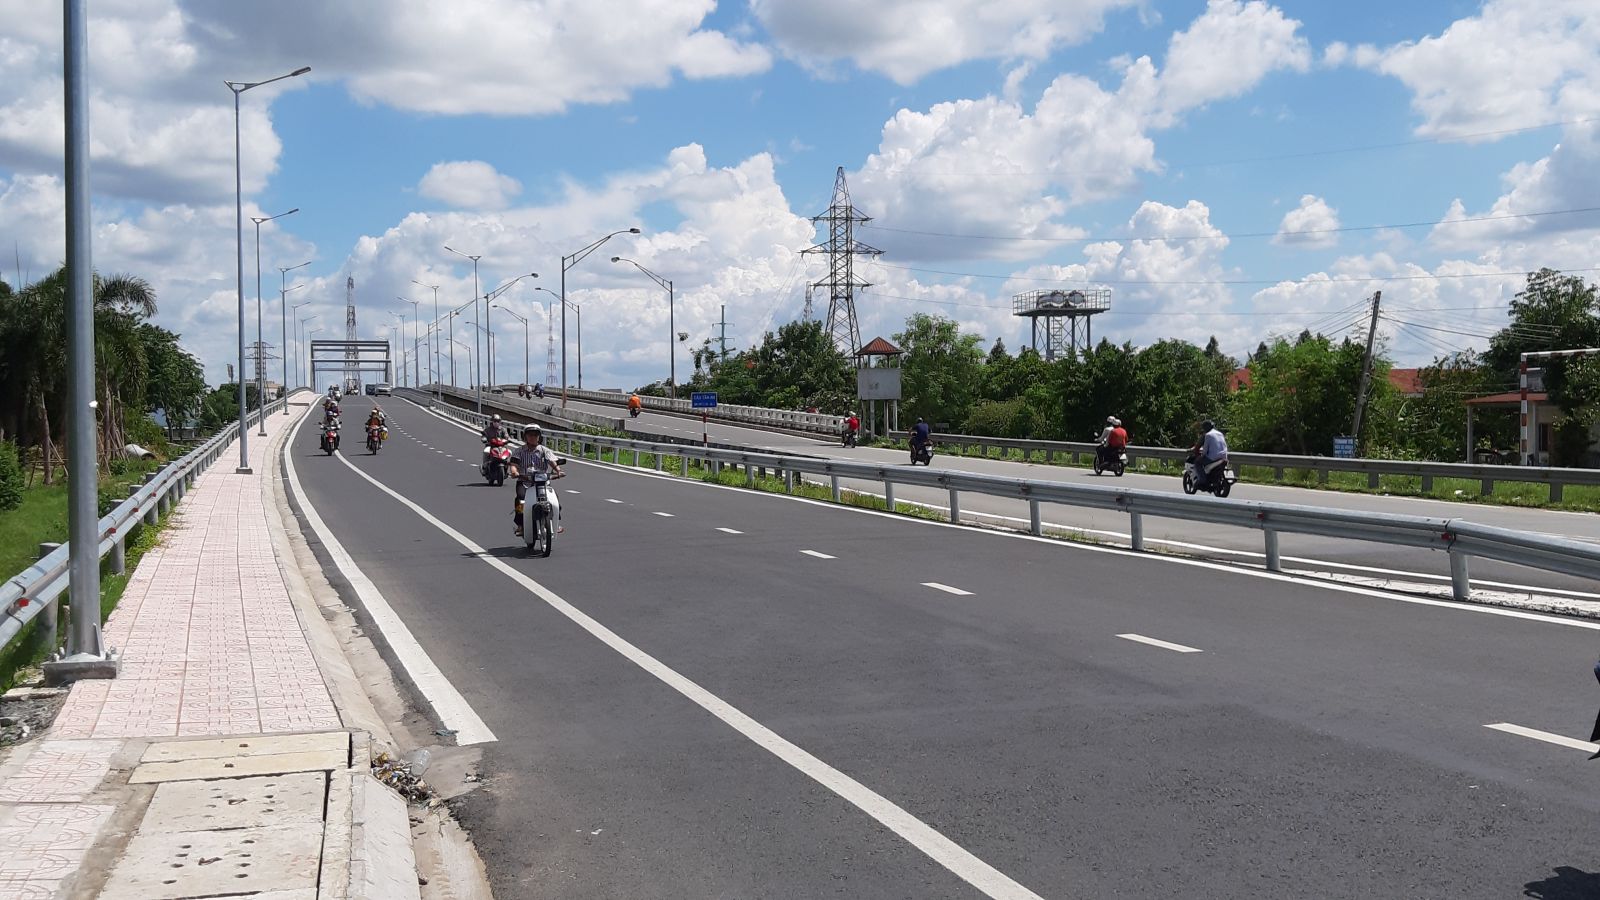 Kết cấu hạ tầng giao thông đường bộ ngày càng hoàn thiện, đáp ứng yêu cầu giao thông - vận tải ngày càng tăng(Trong ảnh: Cầu Tân An 4 thông xe ngày 07/6/2020)